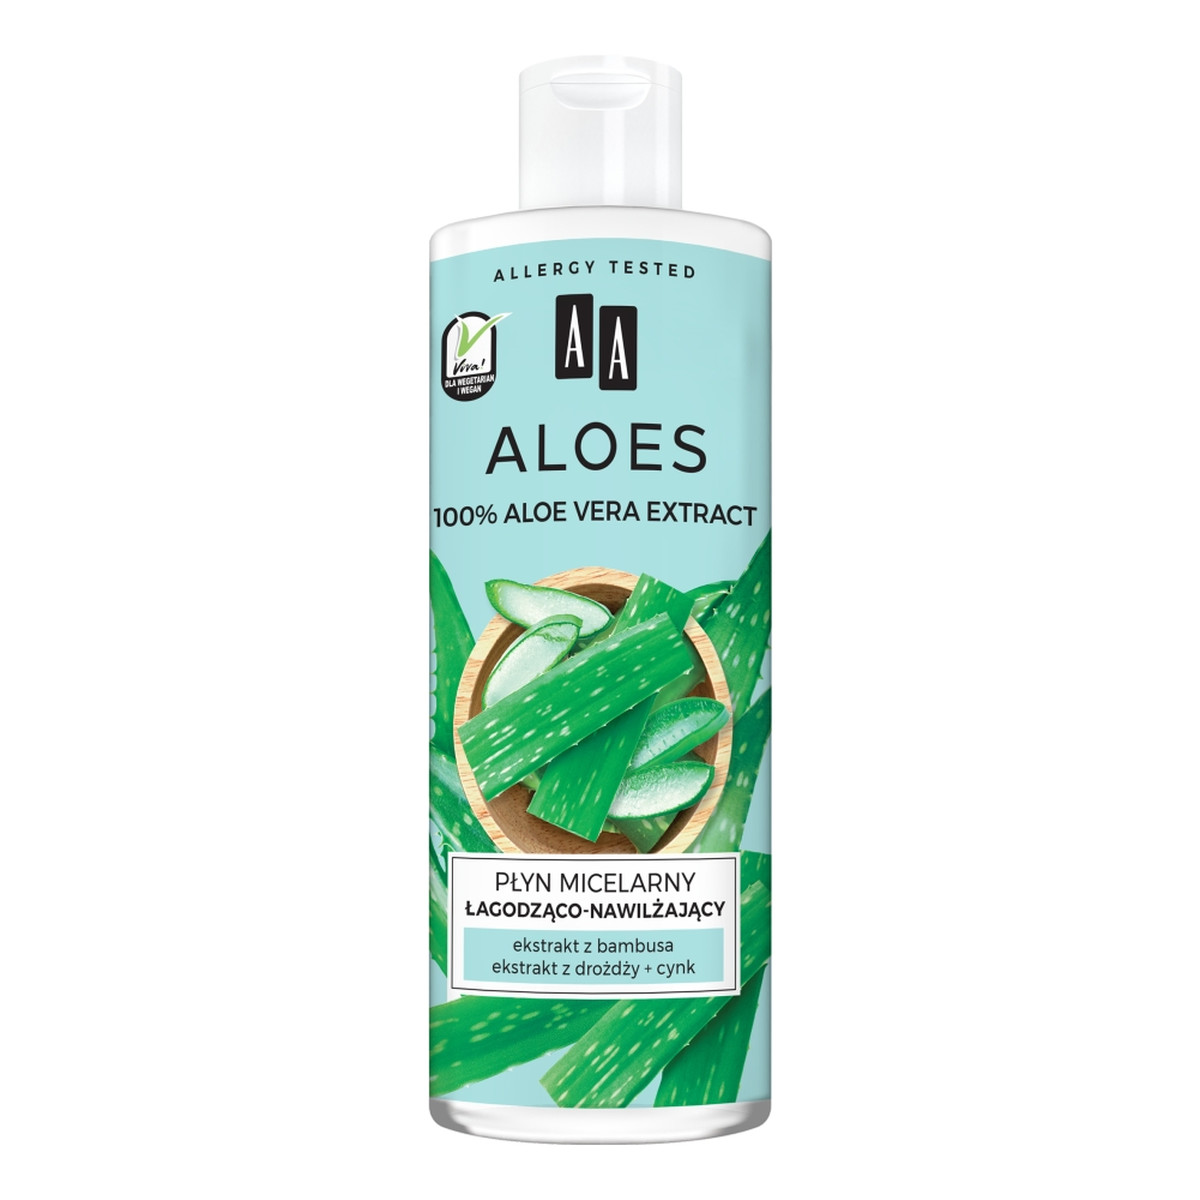 AA Aloes 100% aloe vera extract płyn micelarny łagodząco-nawilżający 400ml